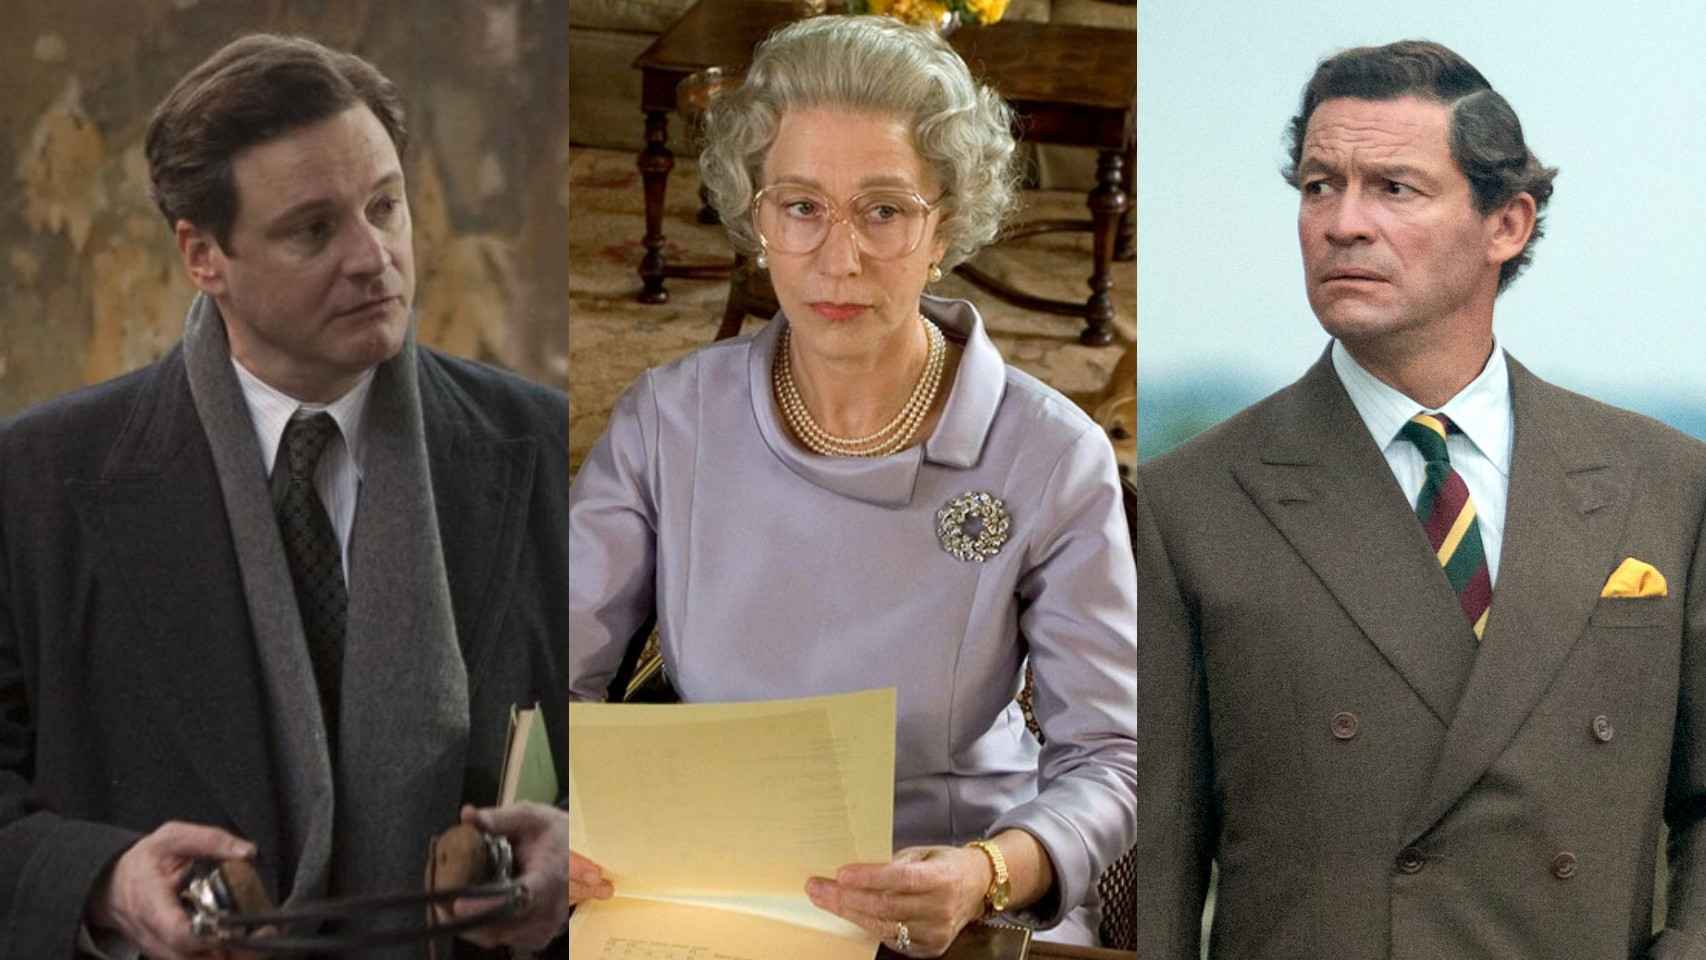 Las 11 mejores películas y series sobre la monarquía británica para conmemorar la coronación de Carlos III